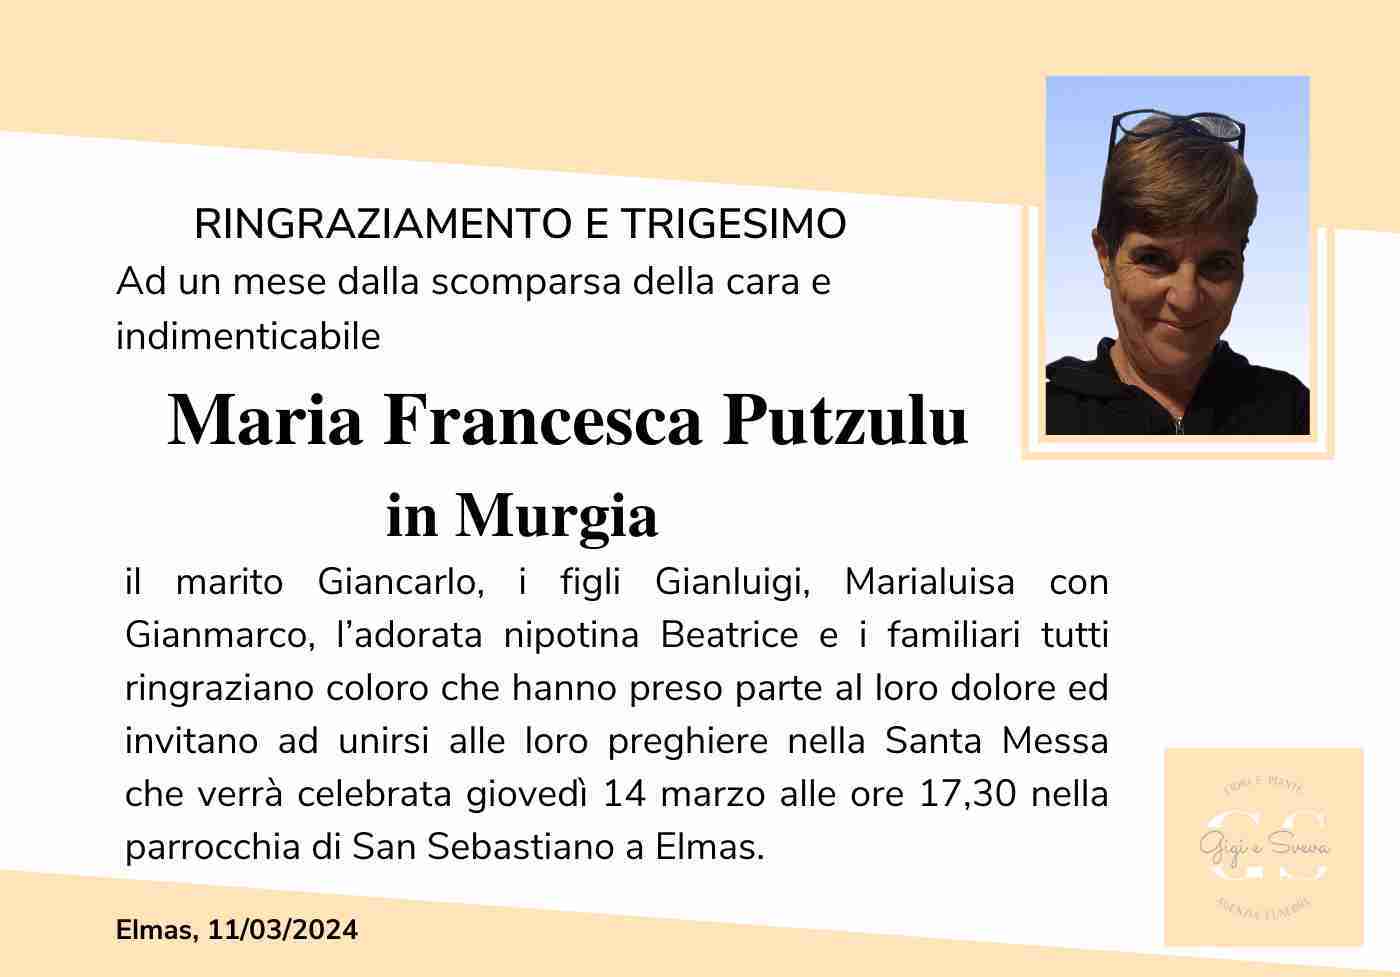 Maria Francesca Putzulu